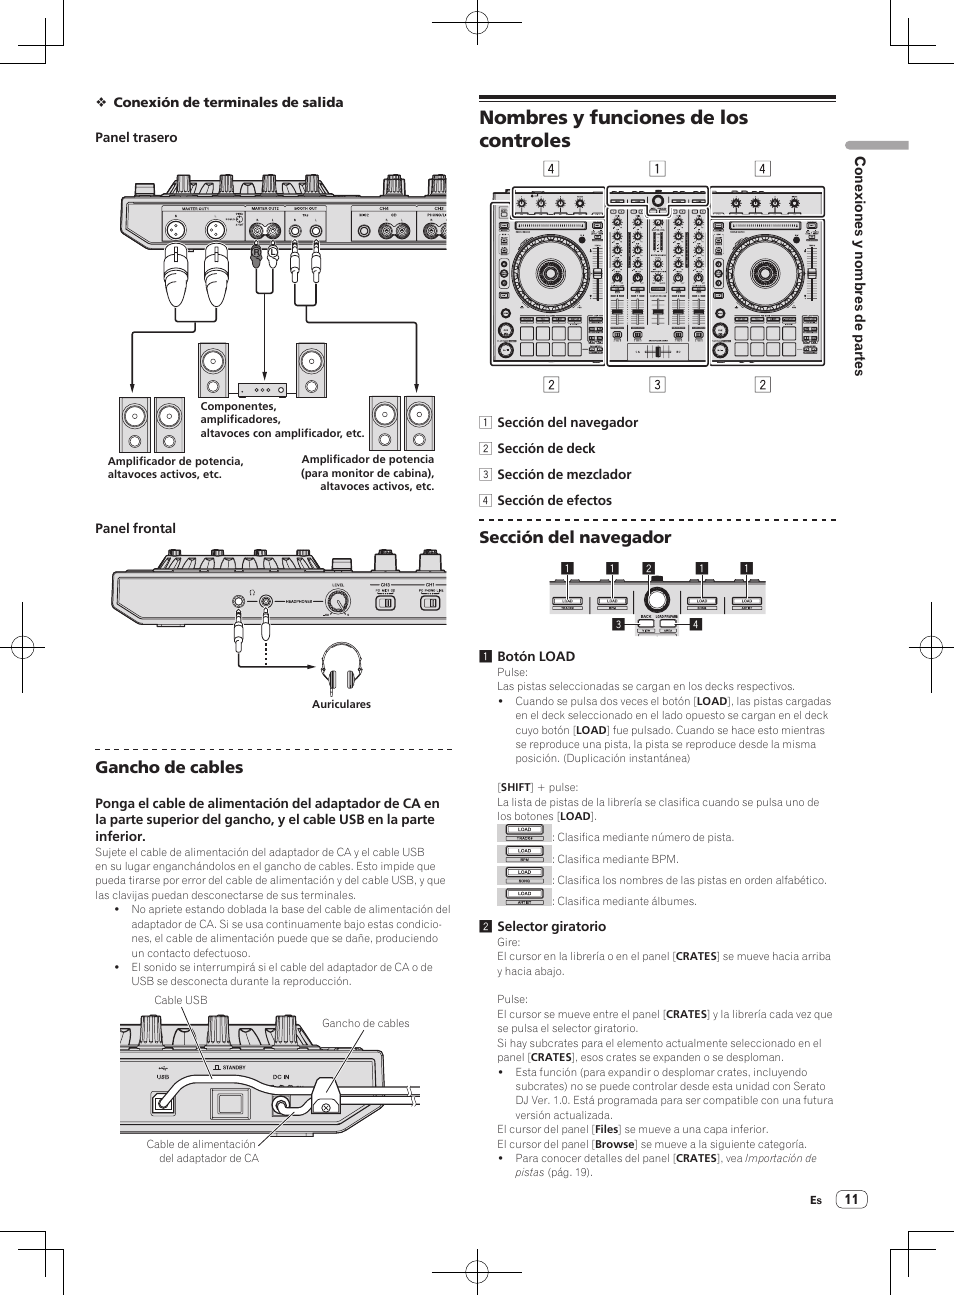 Nombres y funciones de los controles, Gancho de cables, Sección del navegador | Pioneer DDJ-SX Manual del usuario | Página 11 / 33